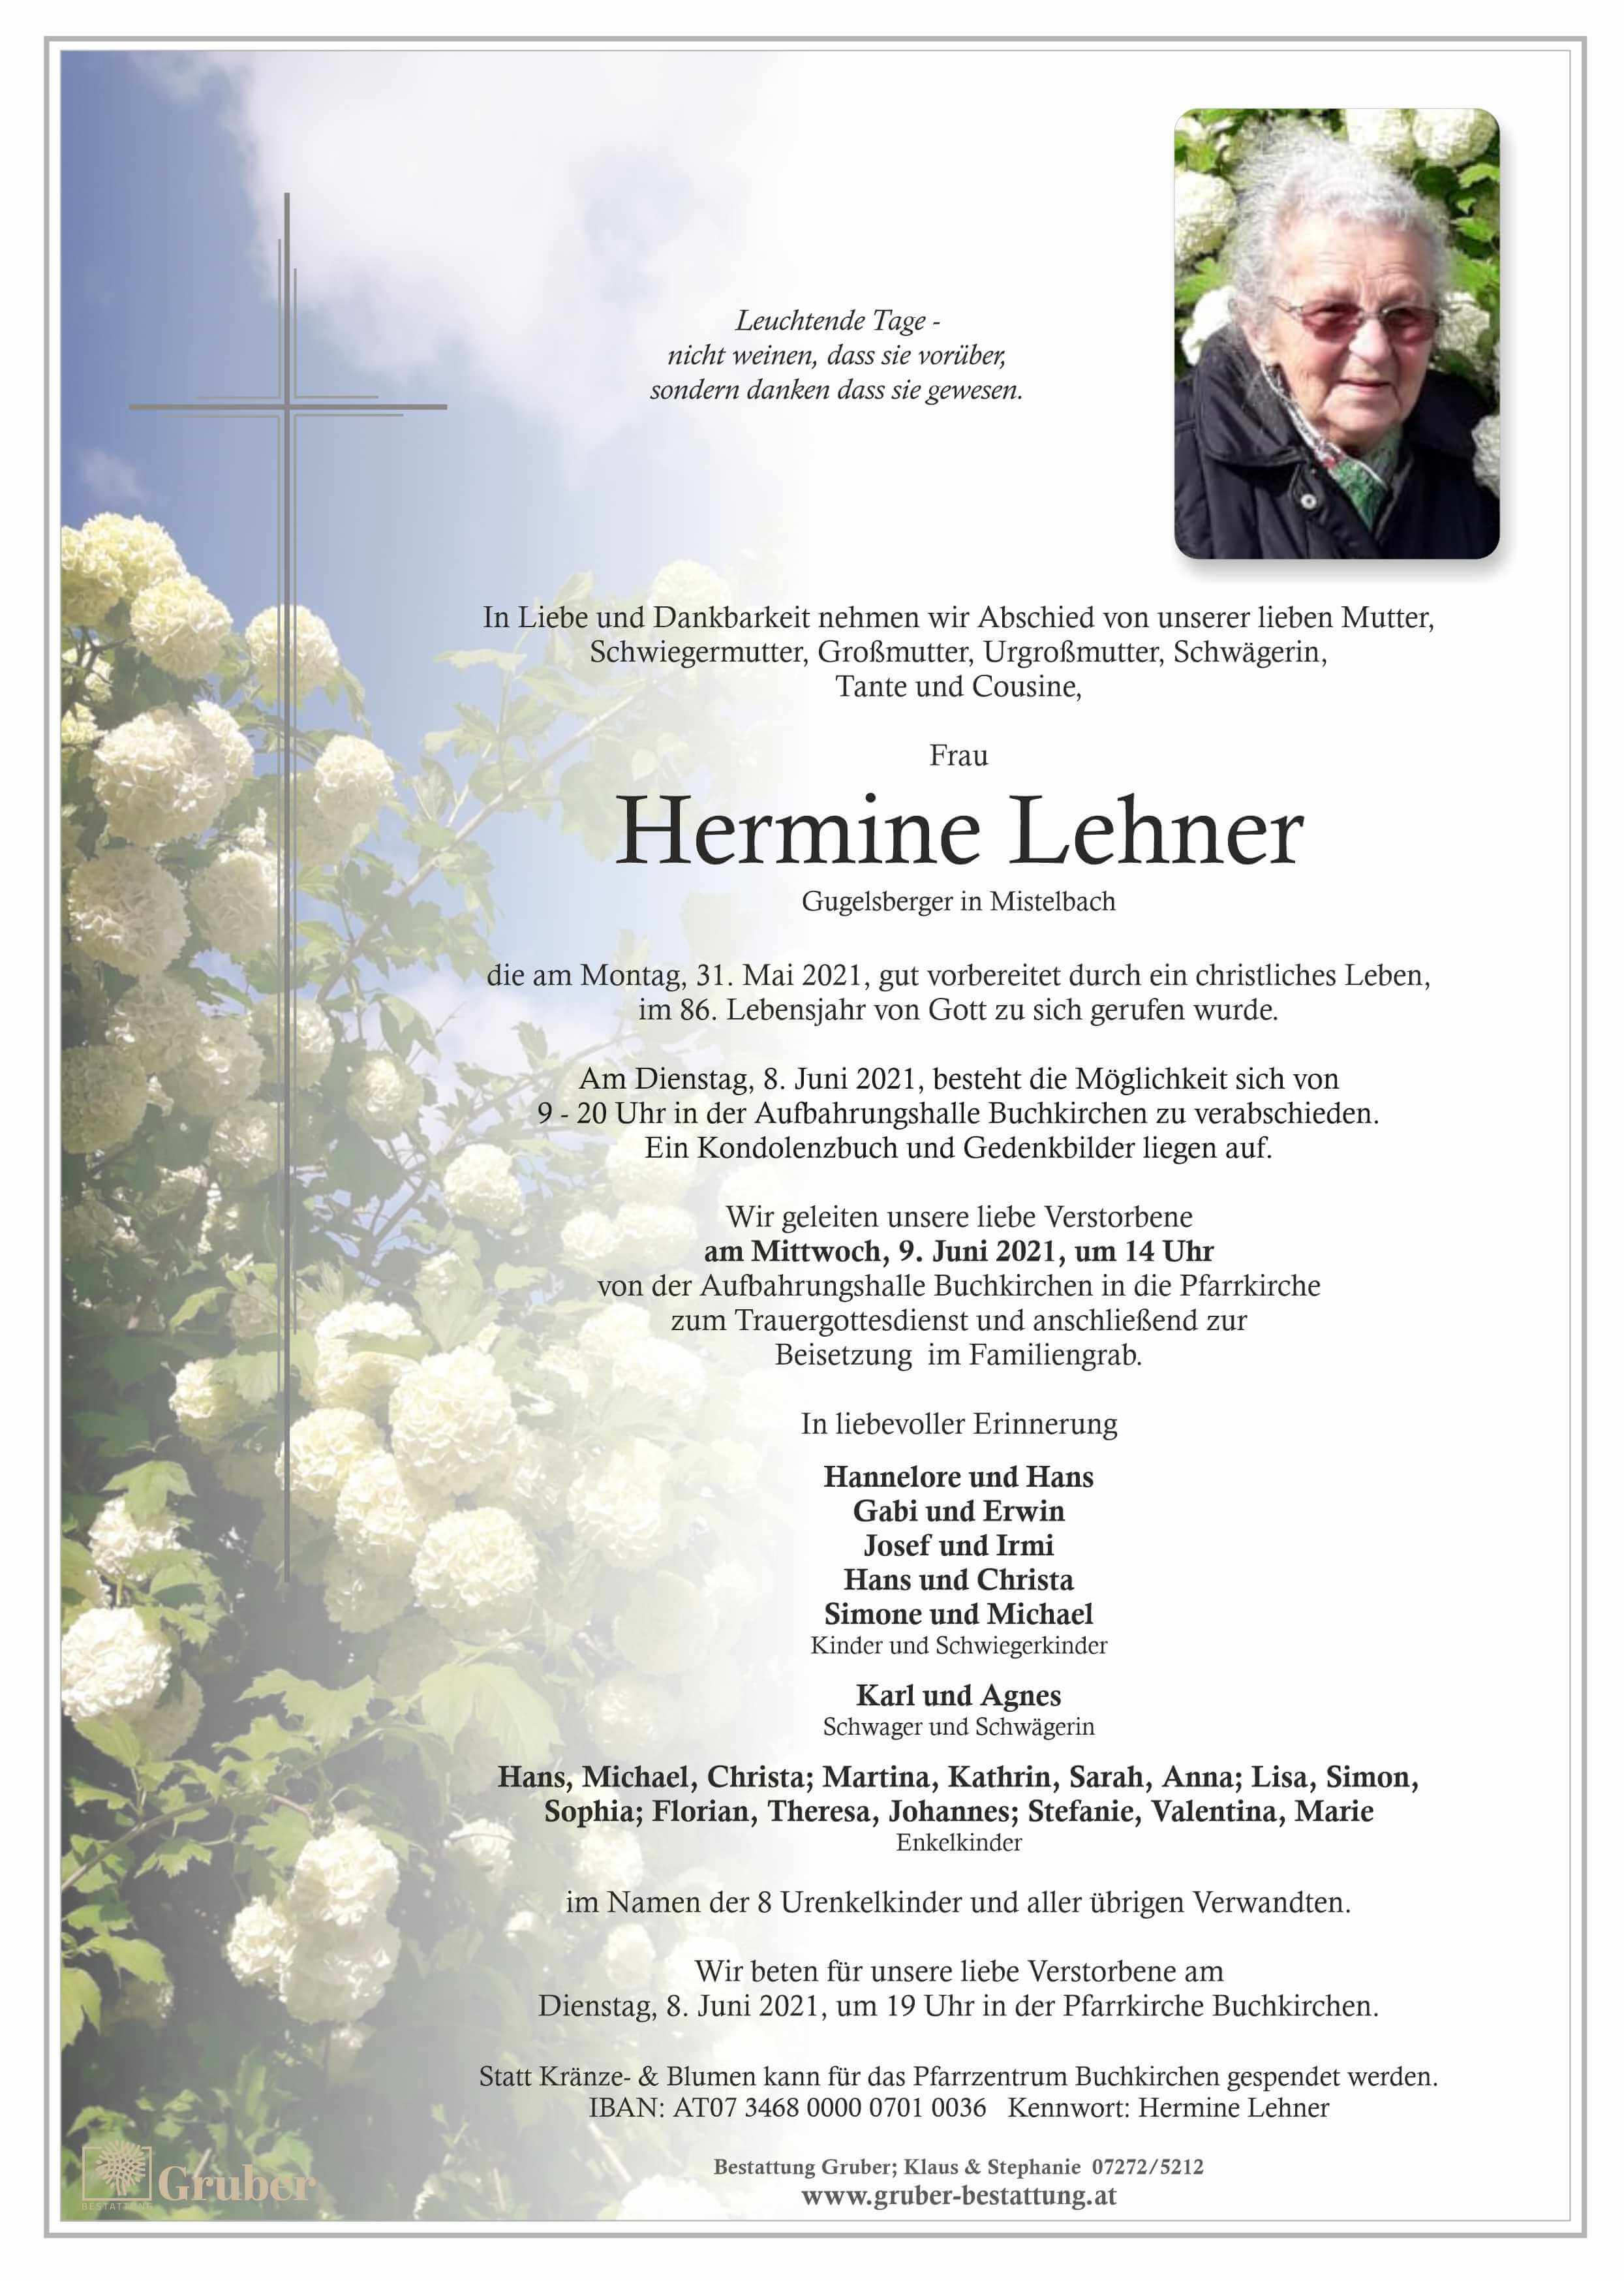 Hermine Lehner (Buchkirchen)